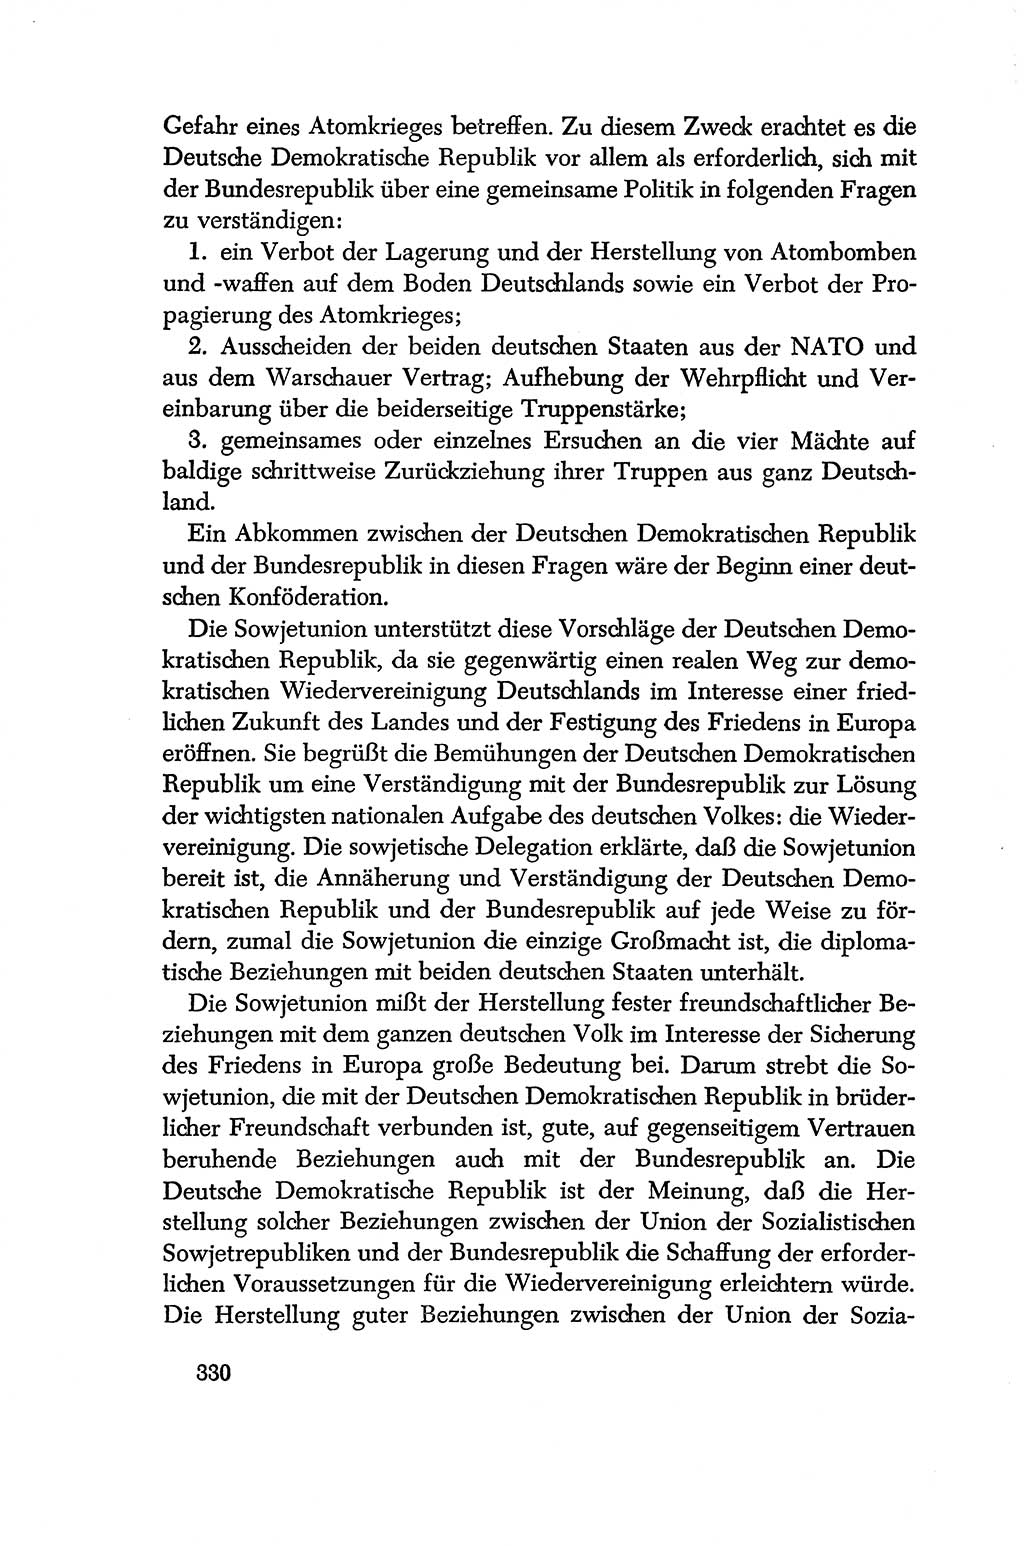 Dokumente der Sozialistischen Einheitspartei Deutschlands (SED) [Deutsche Demokratische Republik (DDR)] 1956-1957, Seite 330 (Dok. SED DDR 1956-1957, S. 330)